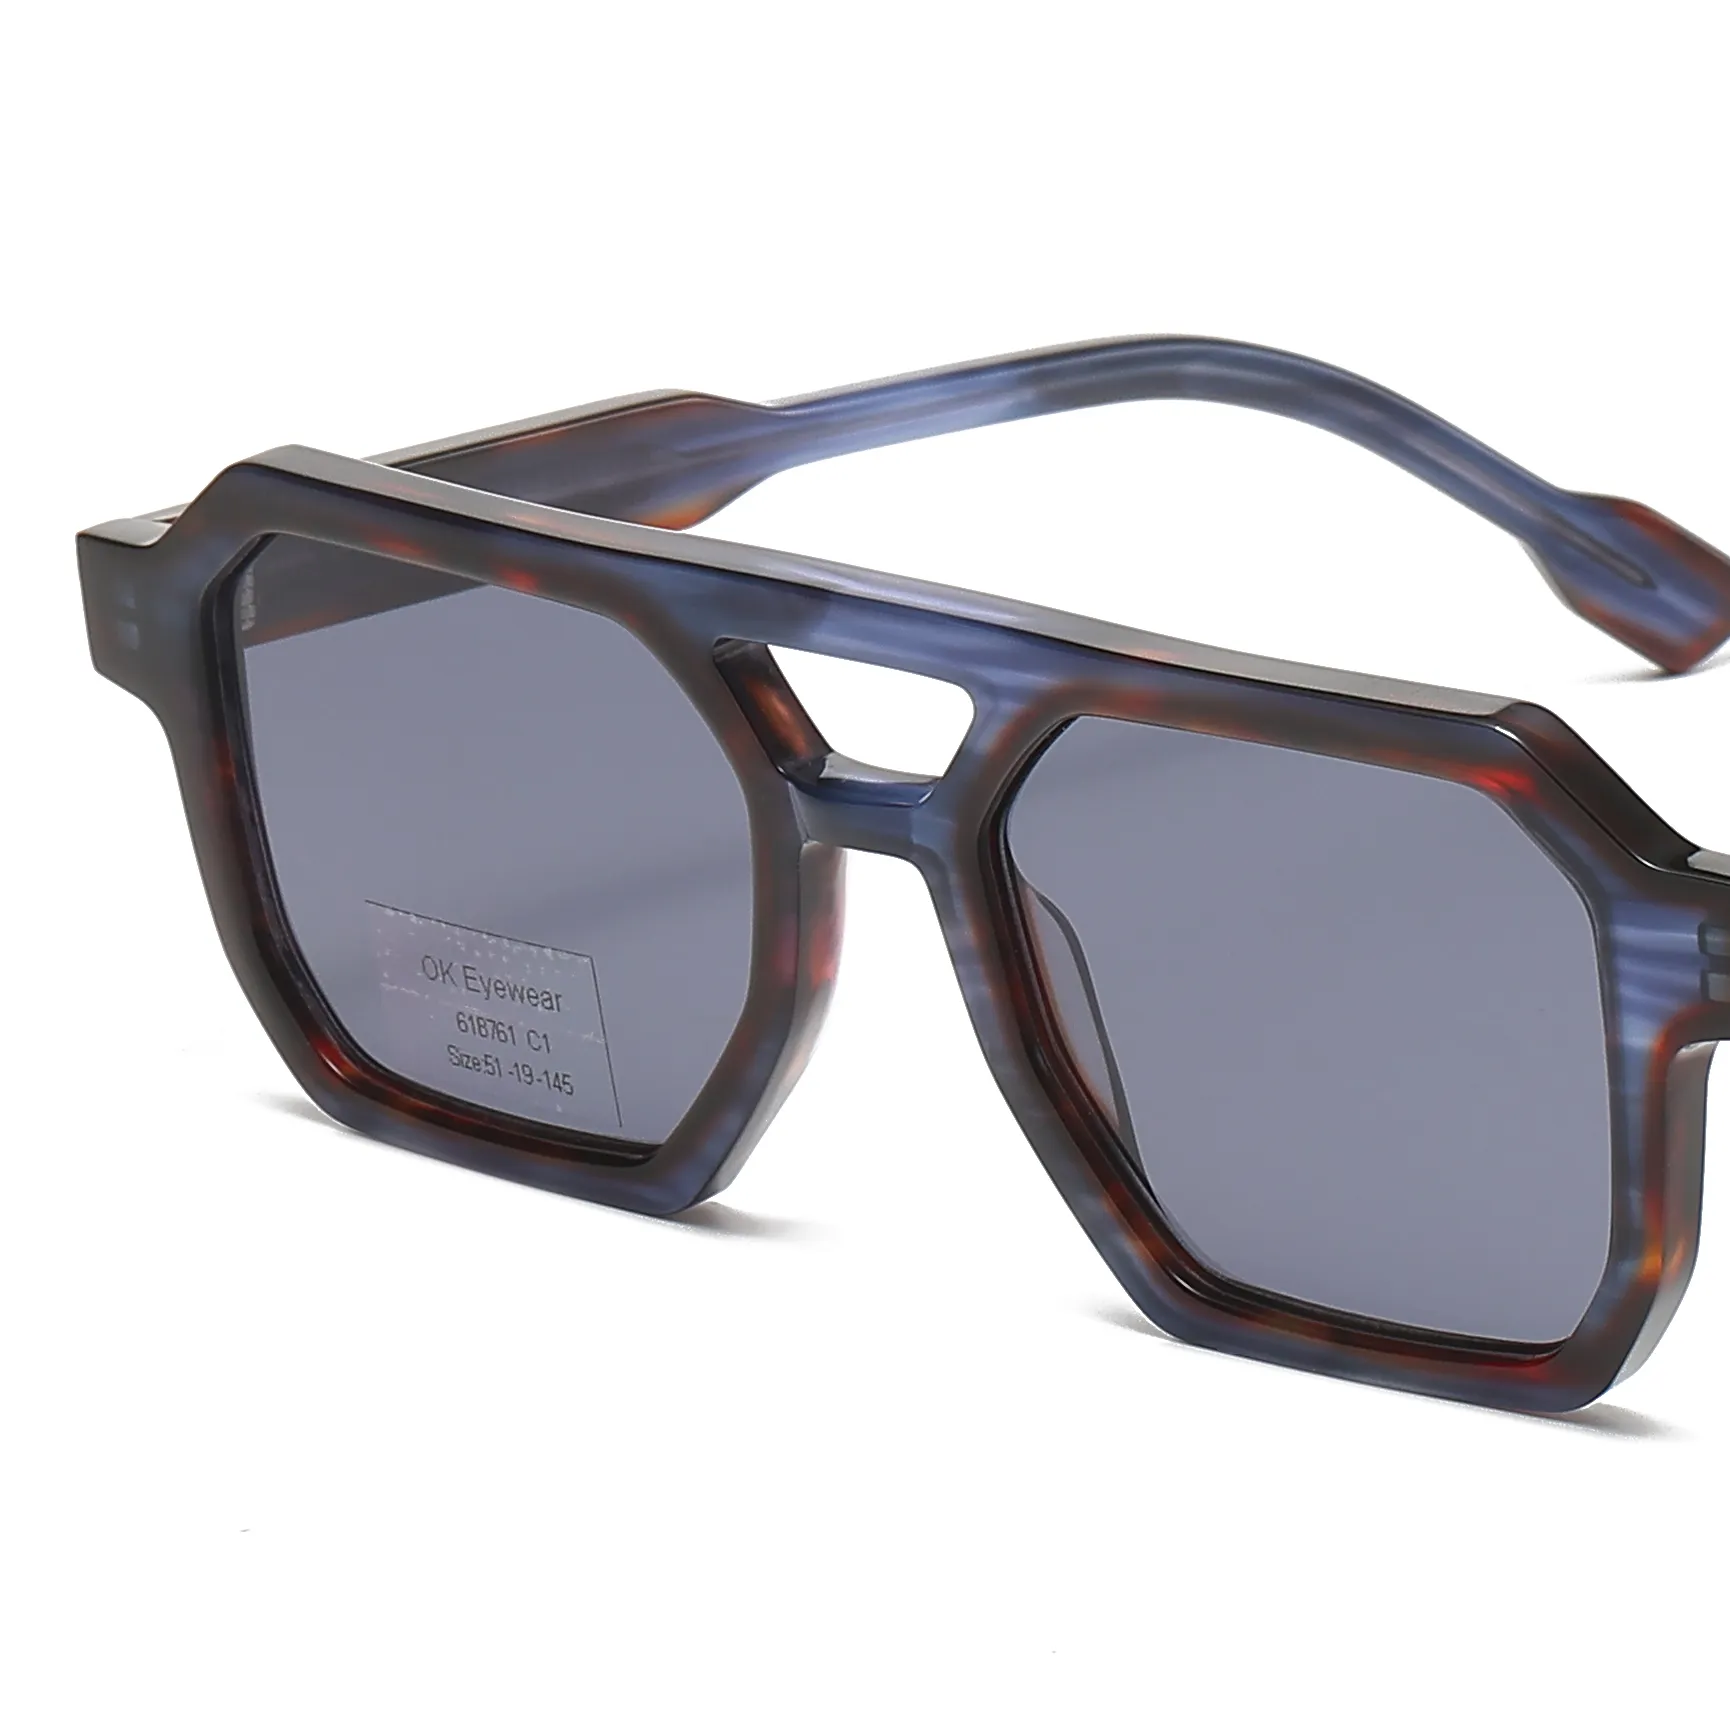 แว่นตากันแดดแฟชั่นดีไซน์แบบสะพานคู่แว่นตากันแดดโพลาไรซ์ UV400สี่เหลี่ยมกรอบย้อนยุคระดับไฮเอนด์ทุกเพศ